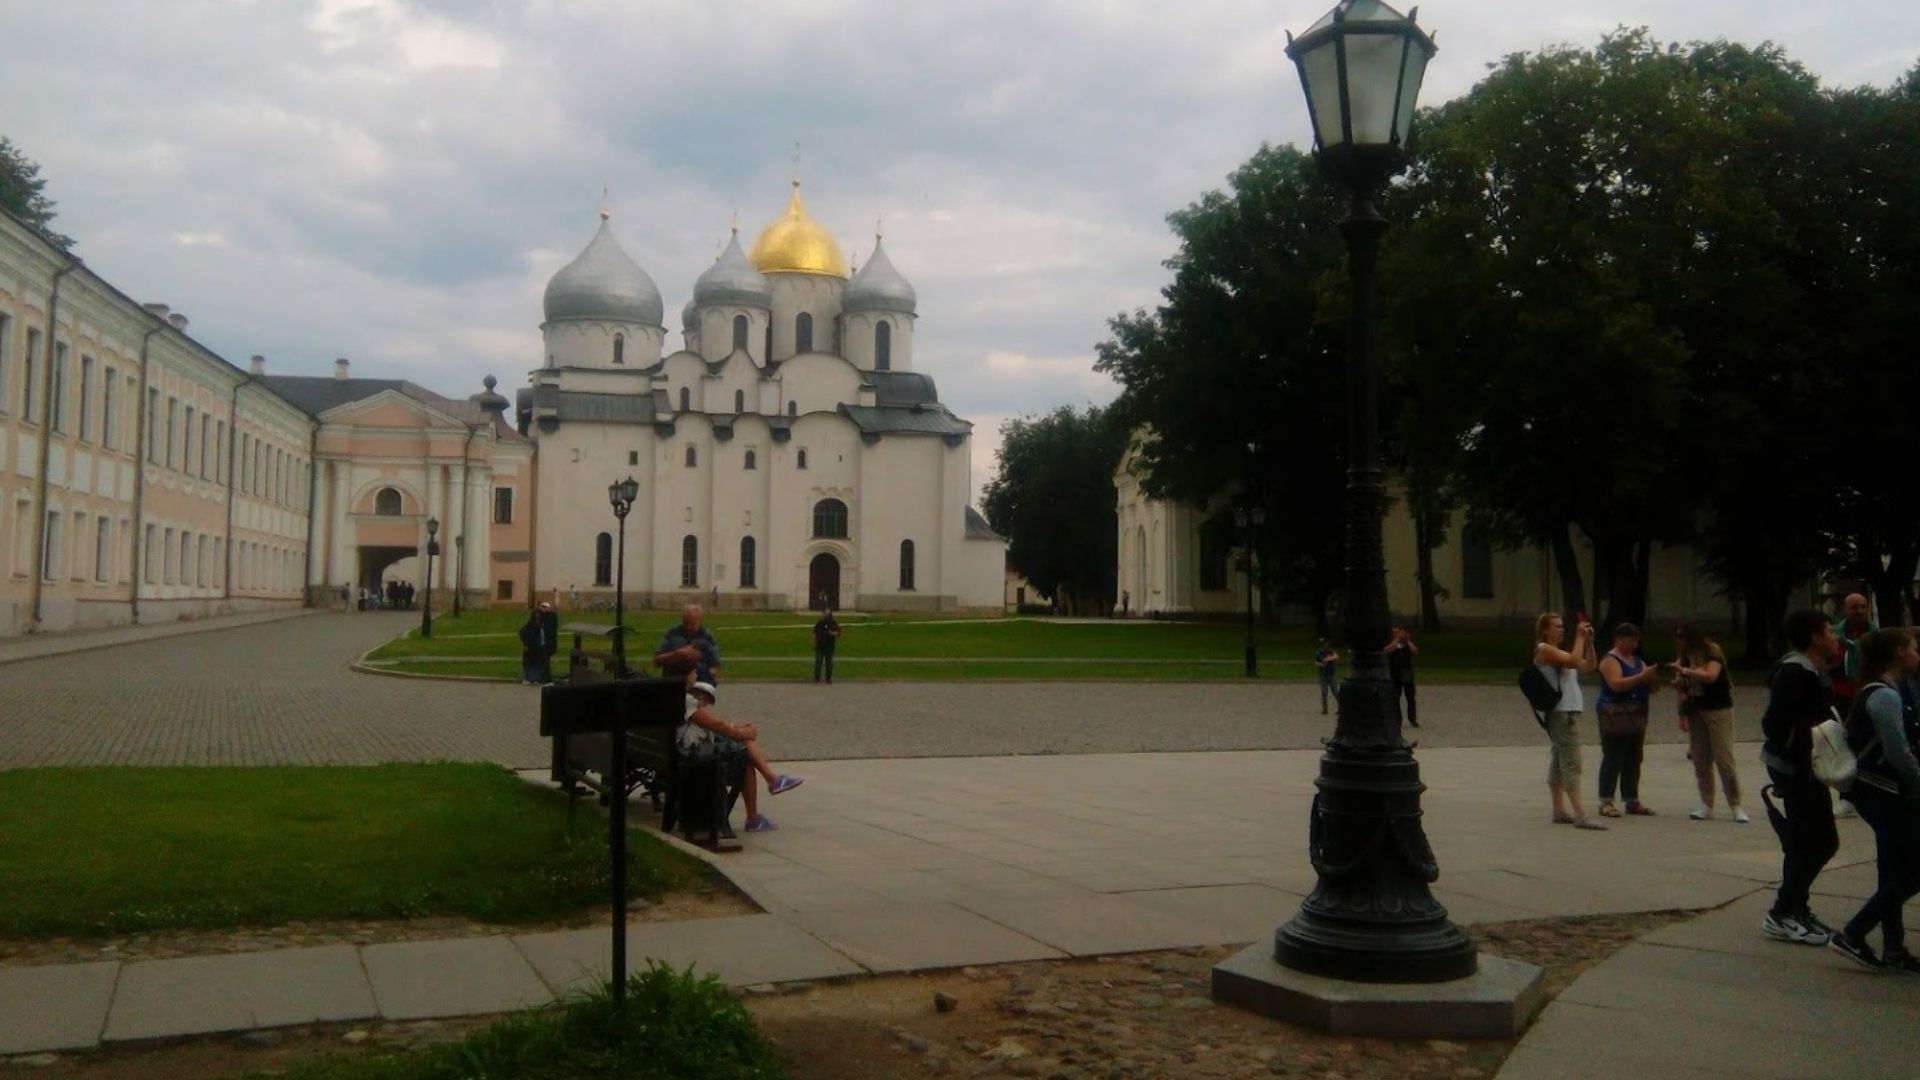 Великий Новгород софийский собор из статьи Великий Новгород-город,куда можно съездить из Питера на выходных